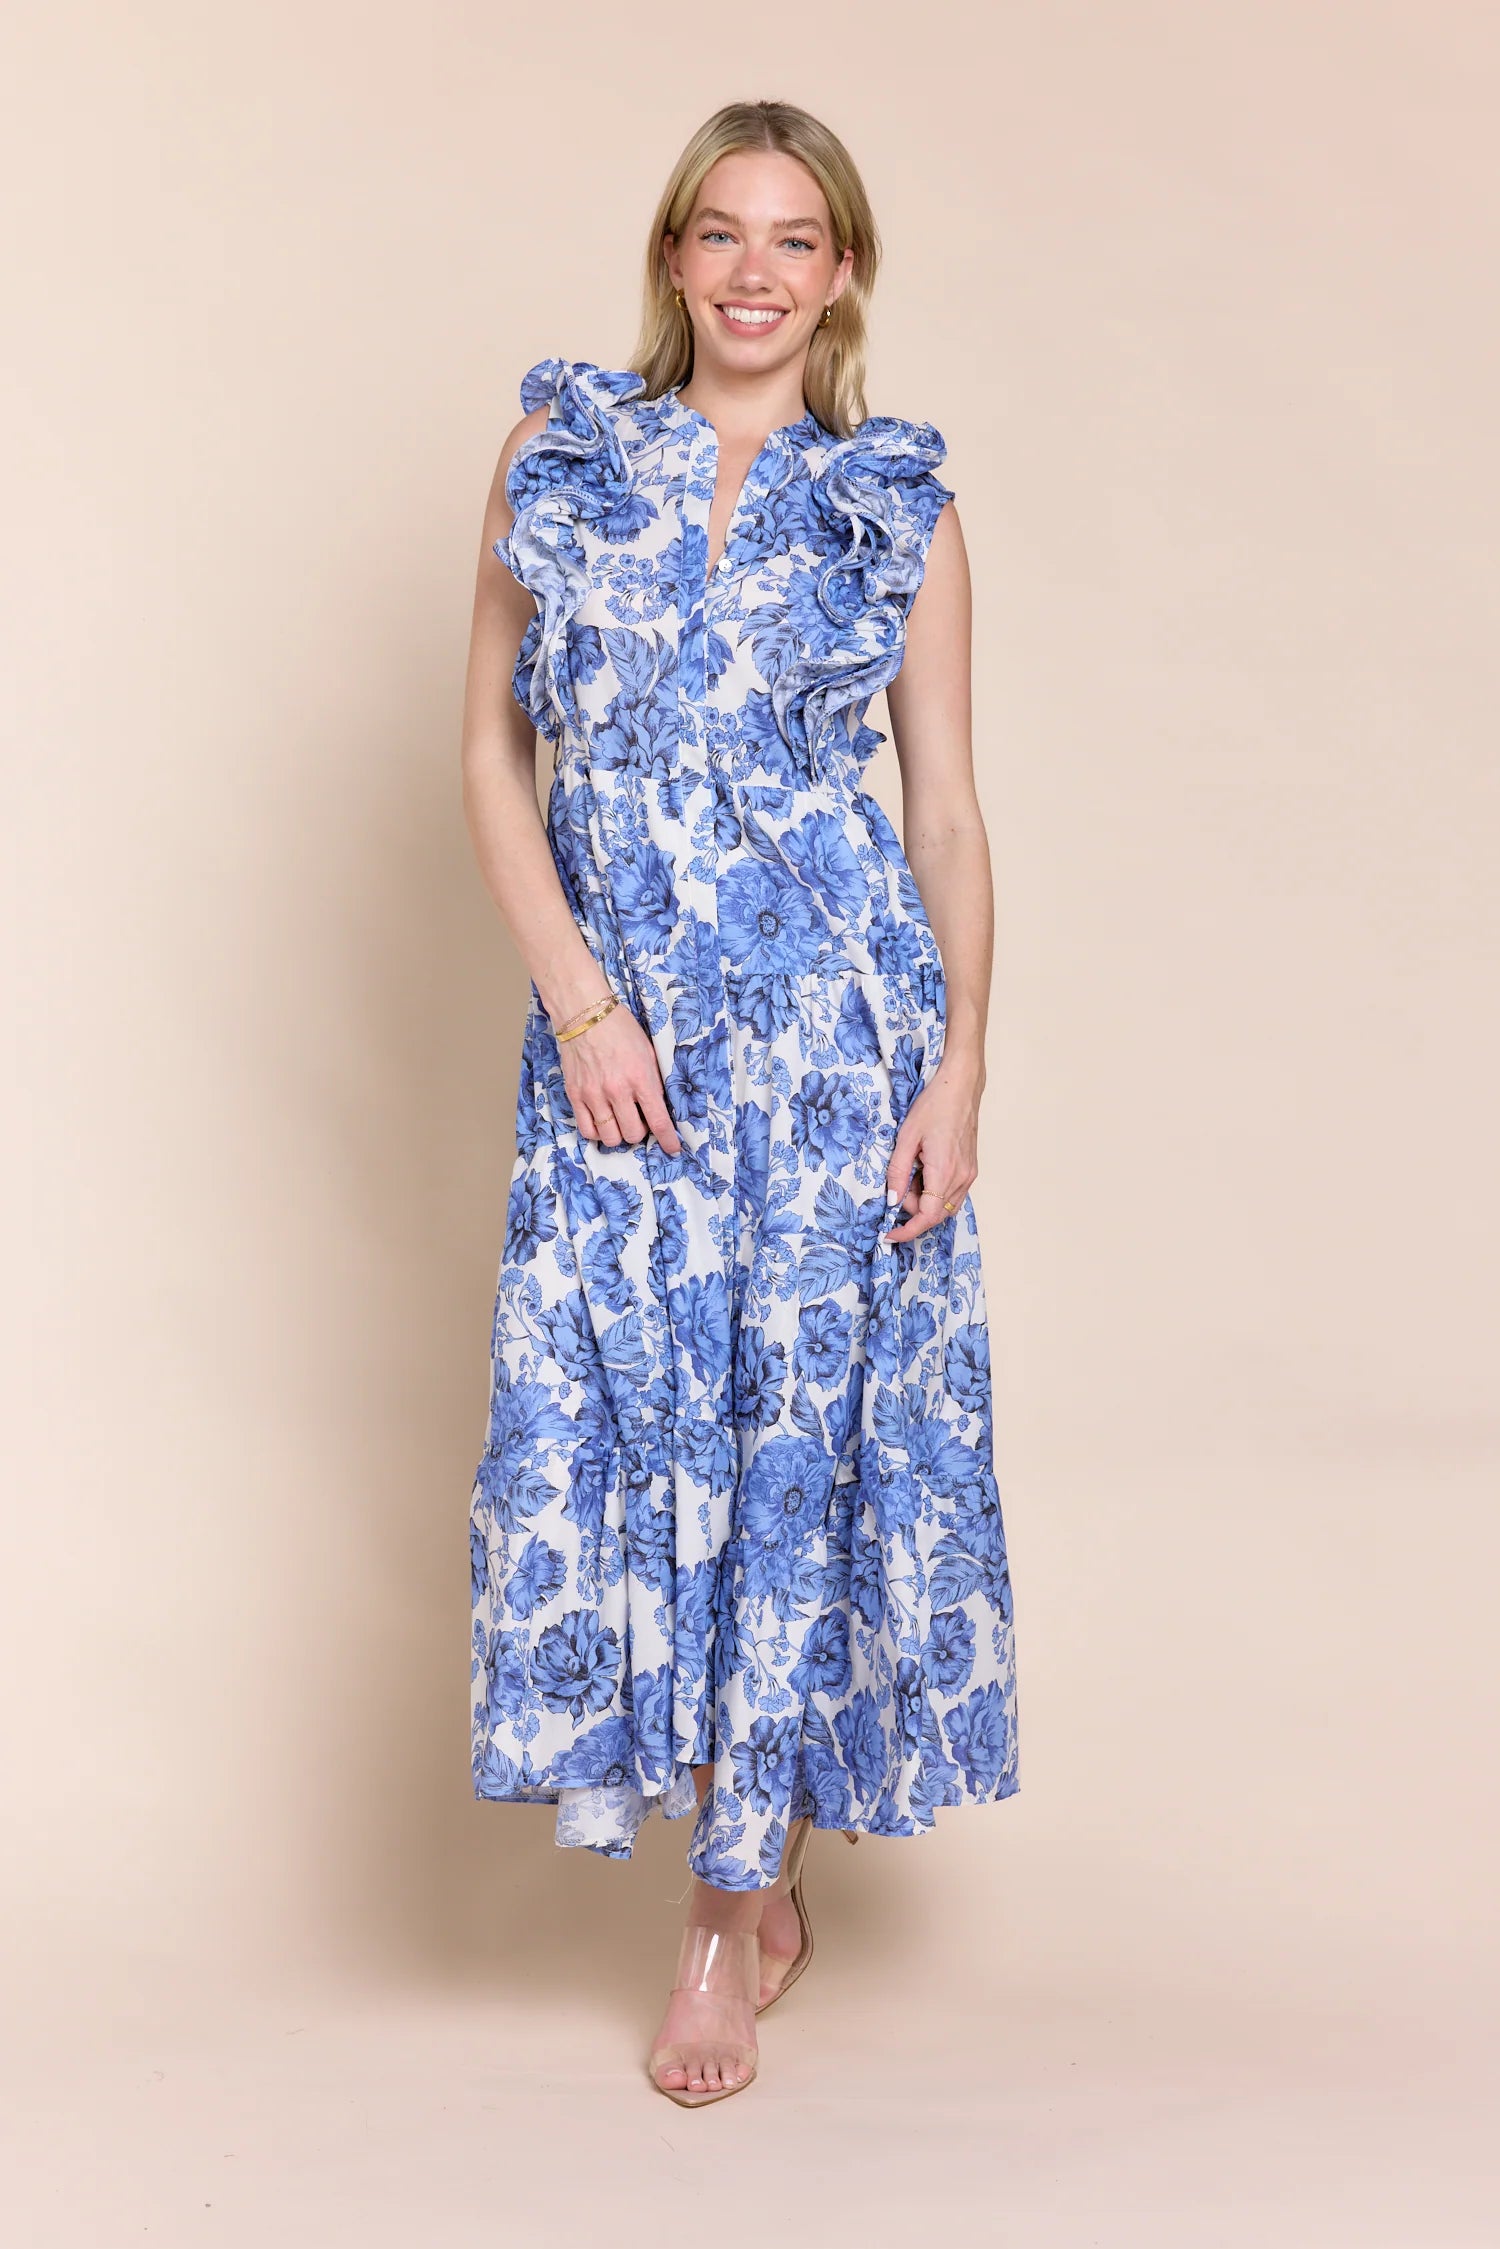 Sofia Liz One Size Dress- Blue Garden